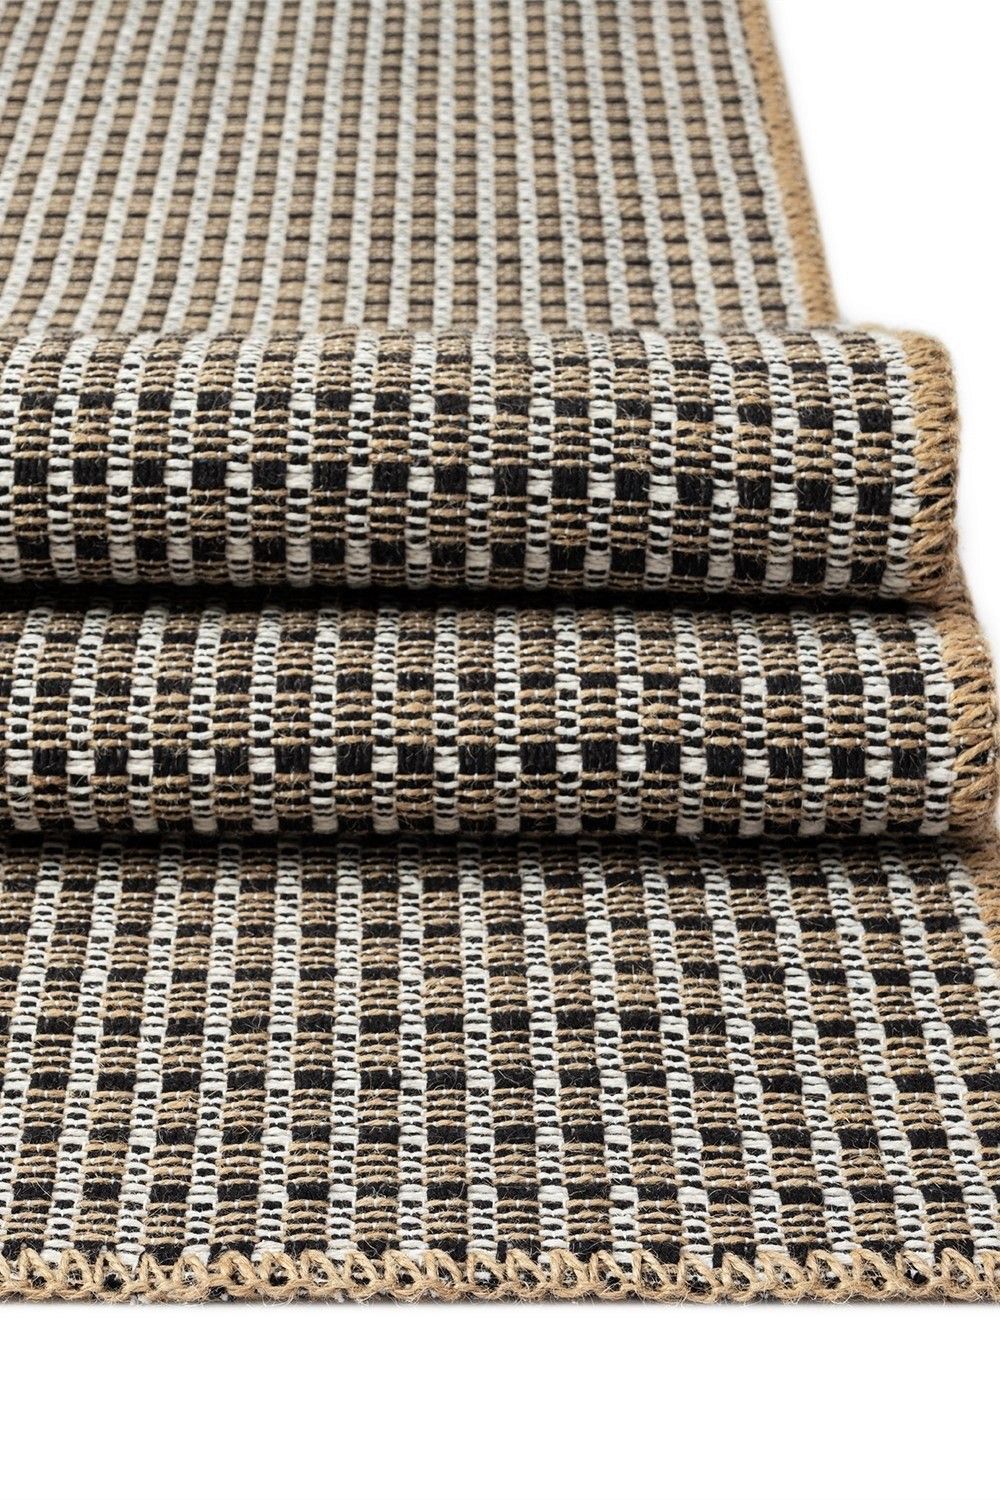 Friolero 2576 - Carpet (80 x 300)